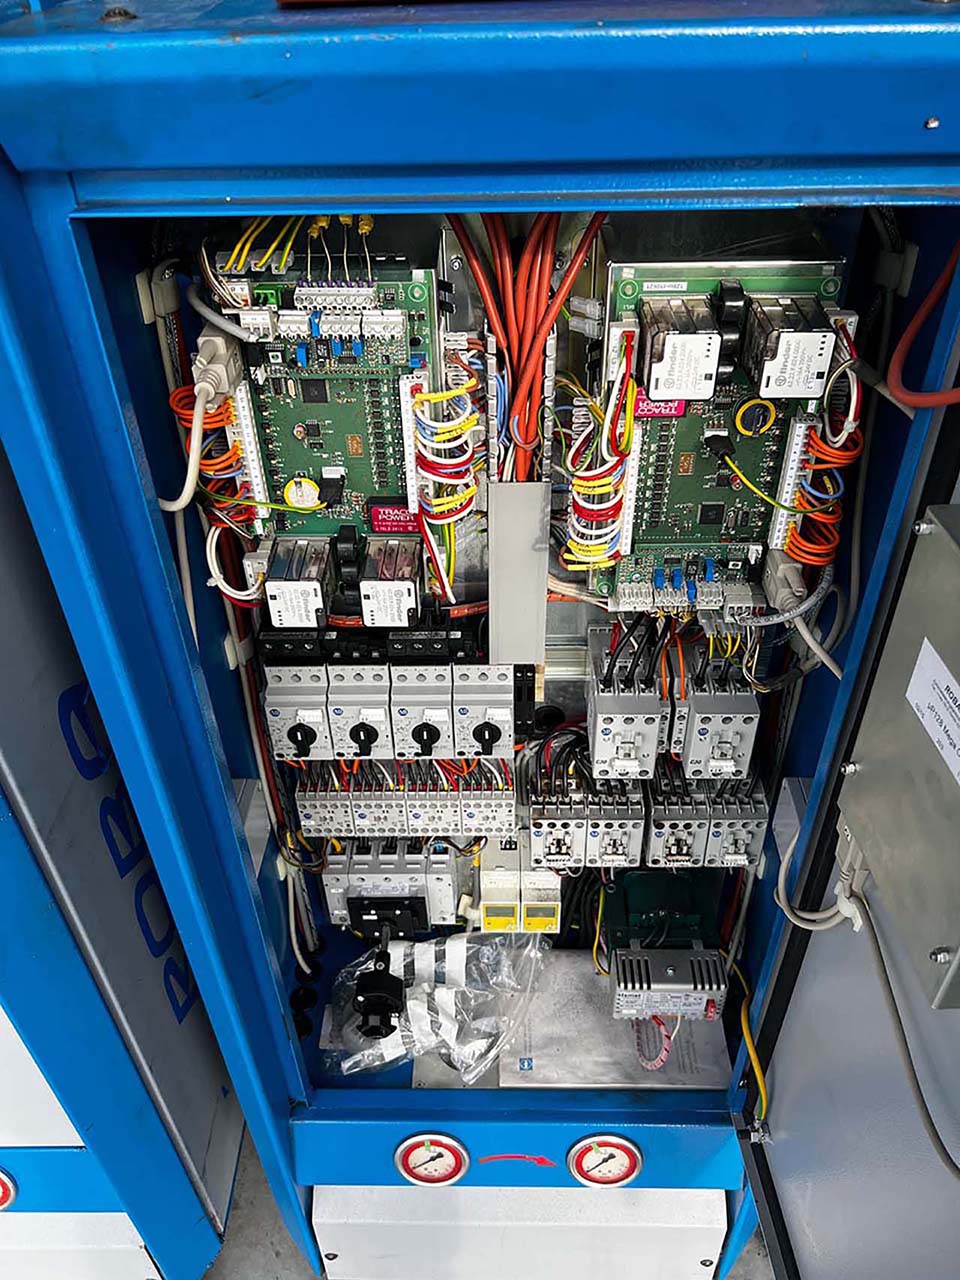 Robamat Thermocast 5212 yağ sıcaklık kontrol ünitesi ZU2201, kullanılmış